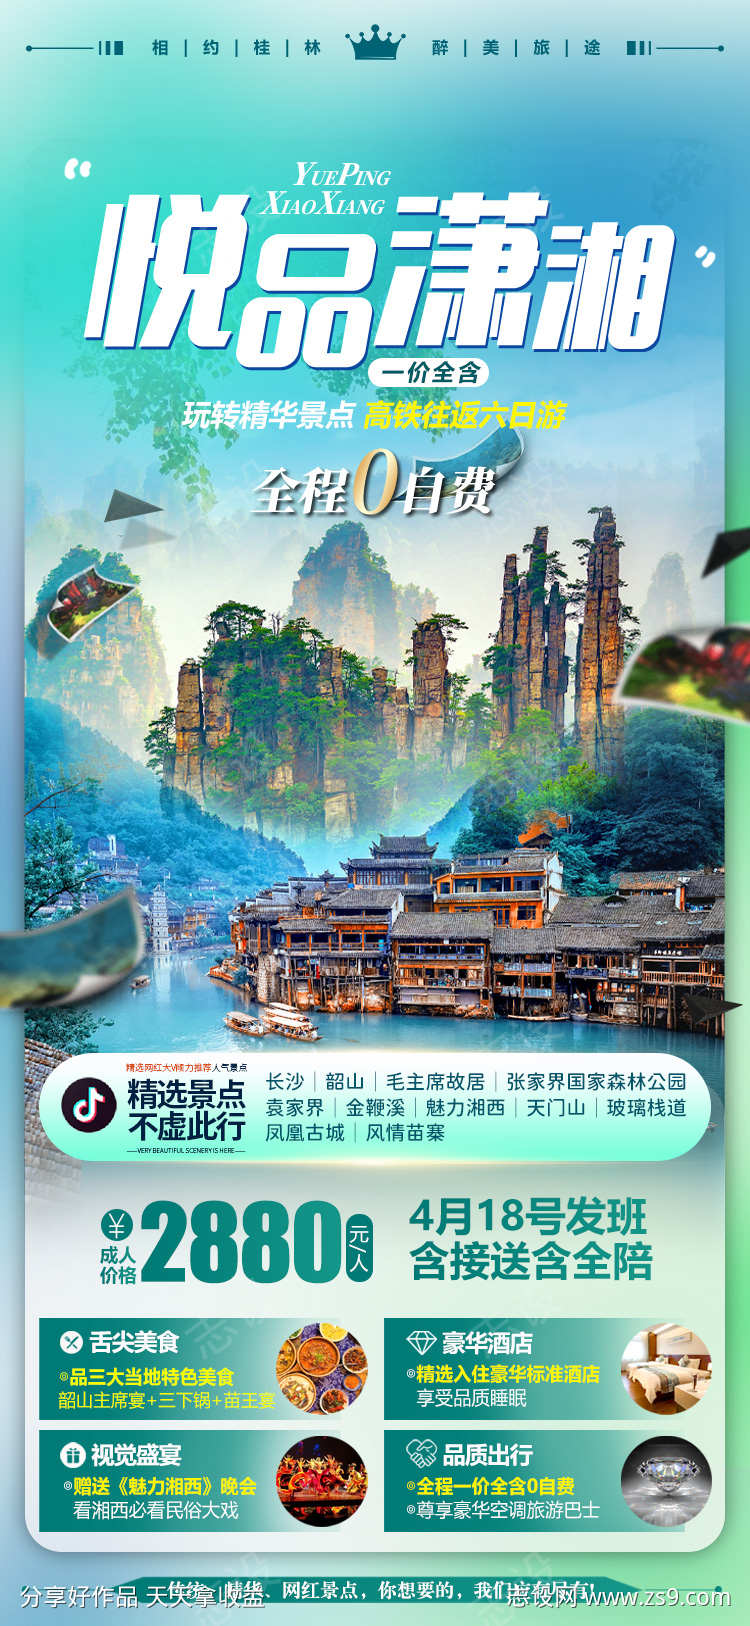 湖南张家界微信旅游海报